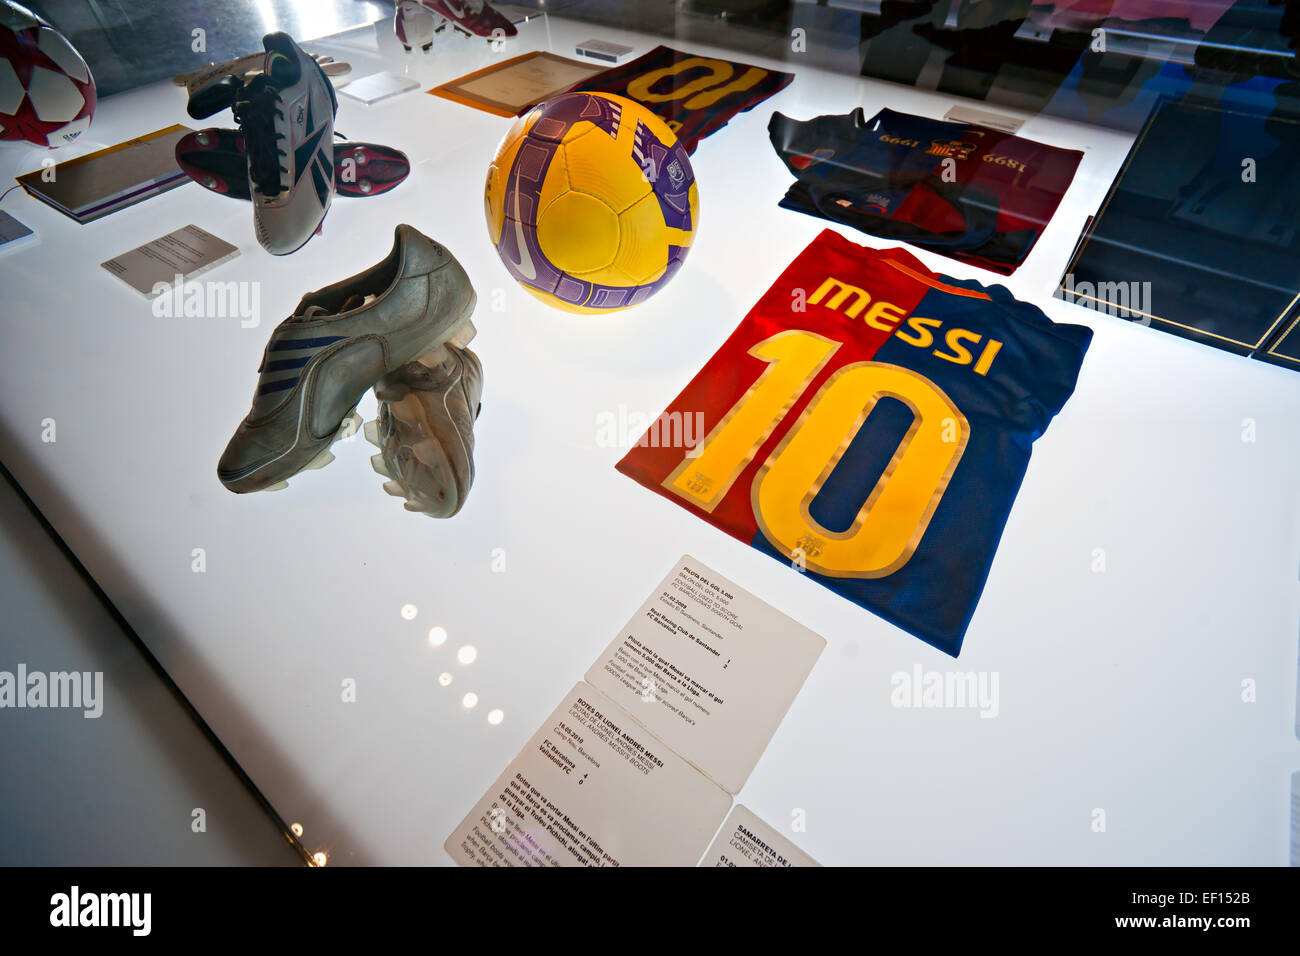 Barcelone - Espagne, le 19 décembre : le musée du FC Barcelona inauguré le 24 septembre 1984.Le musée occupe 3 500 mètres carrés Banque D'Images